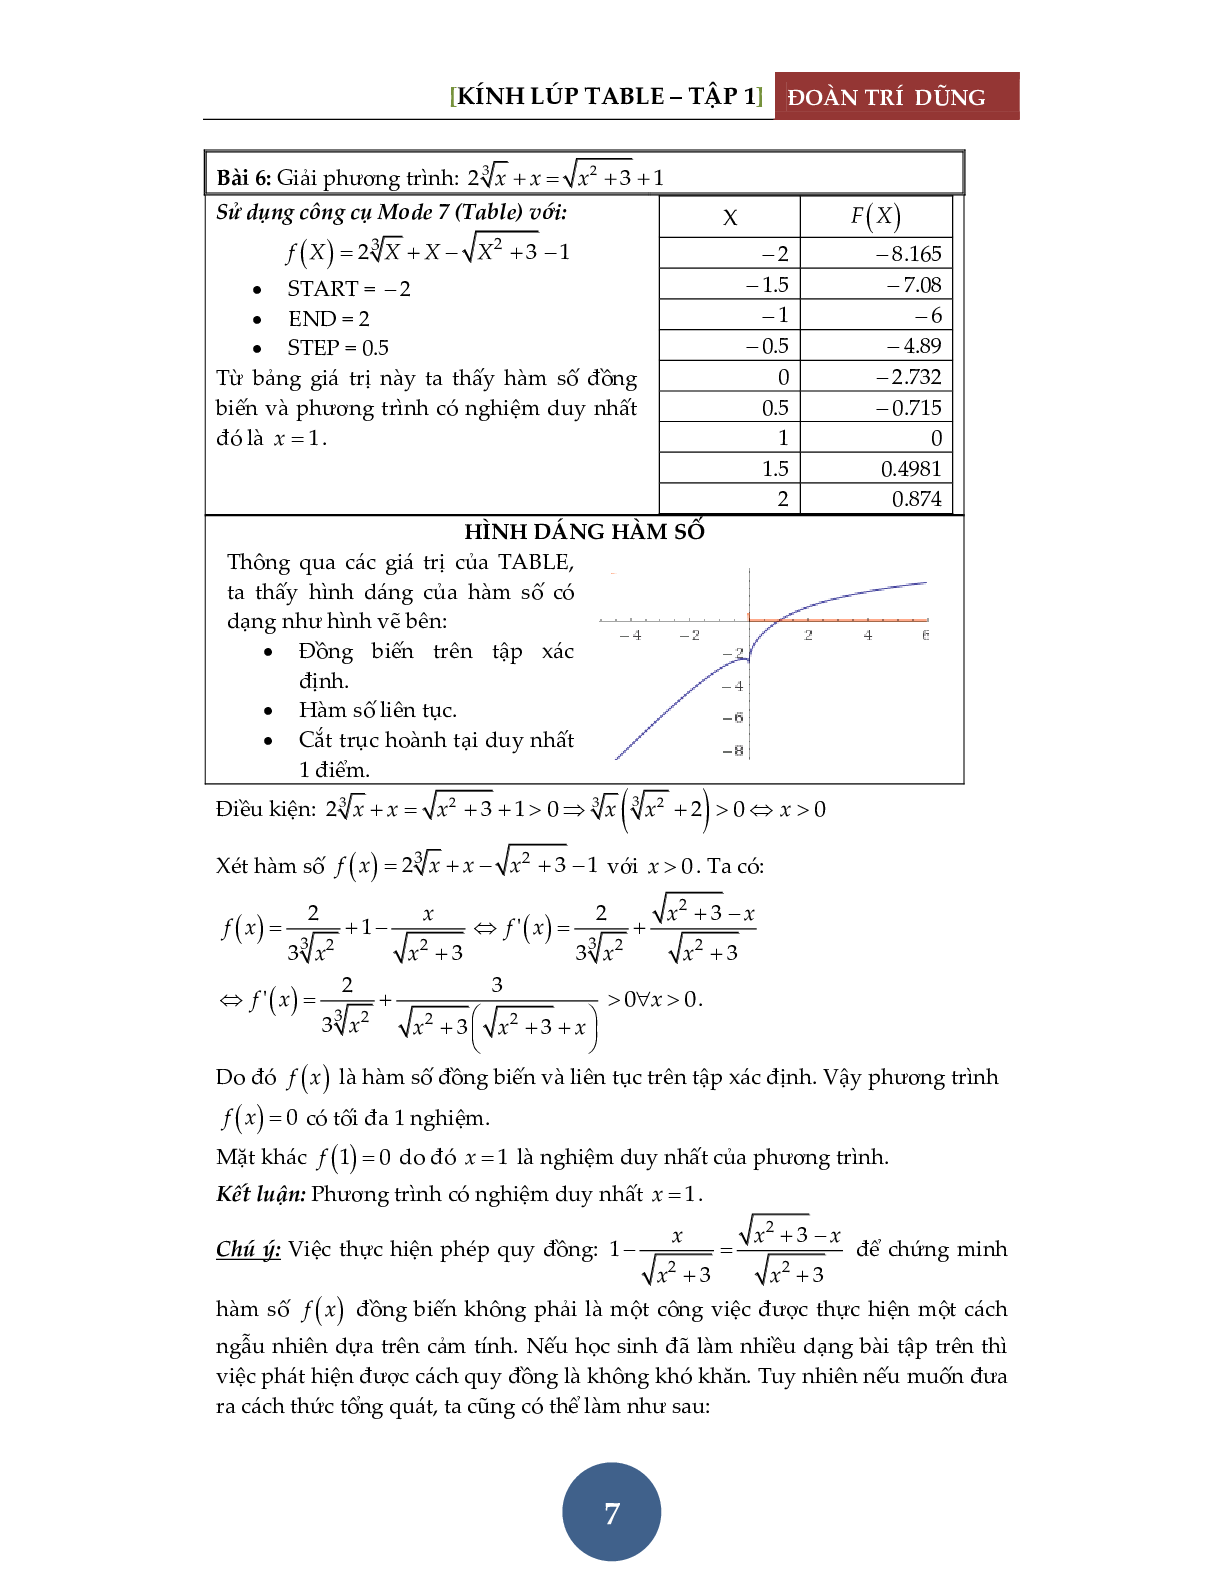 Giải phương trình bằng máy tính Casio – Đánh giá hàm đơn điệu (trang 8)